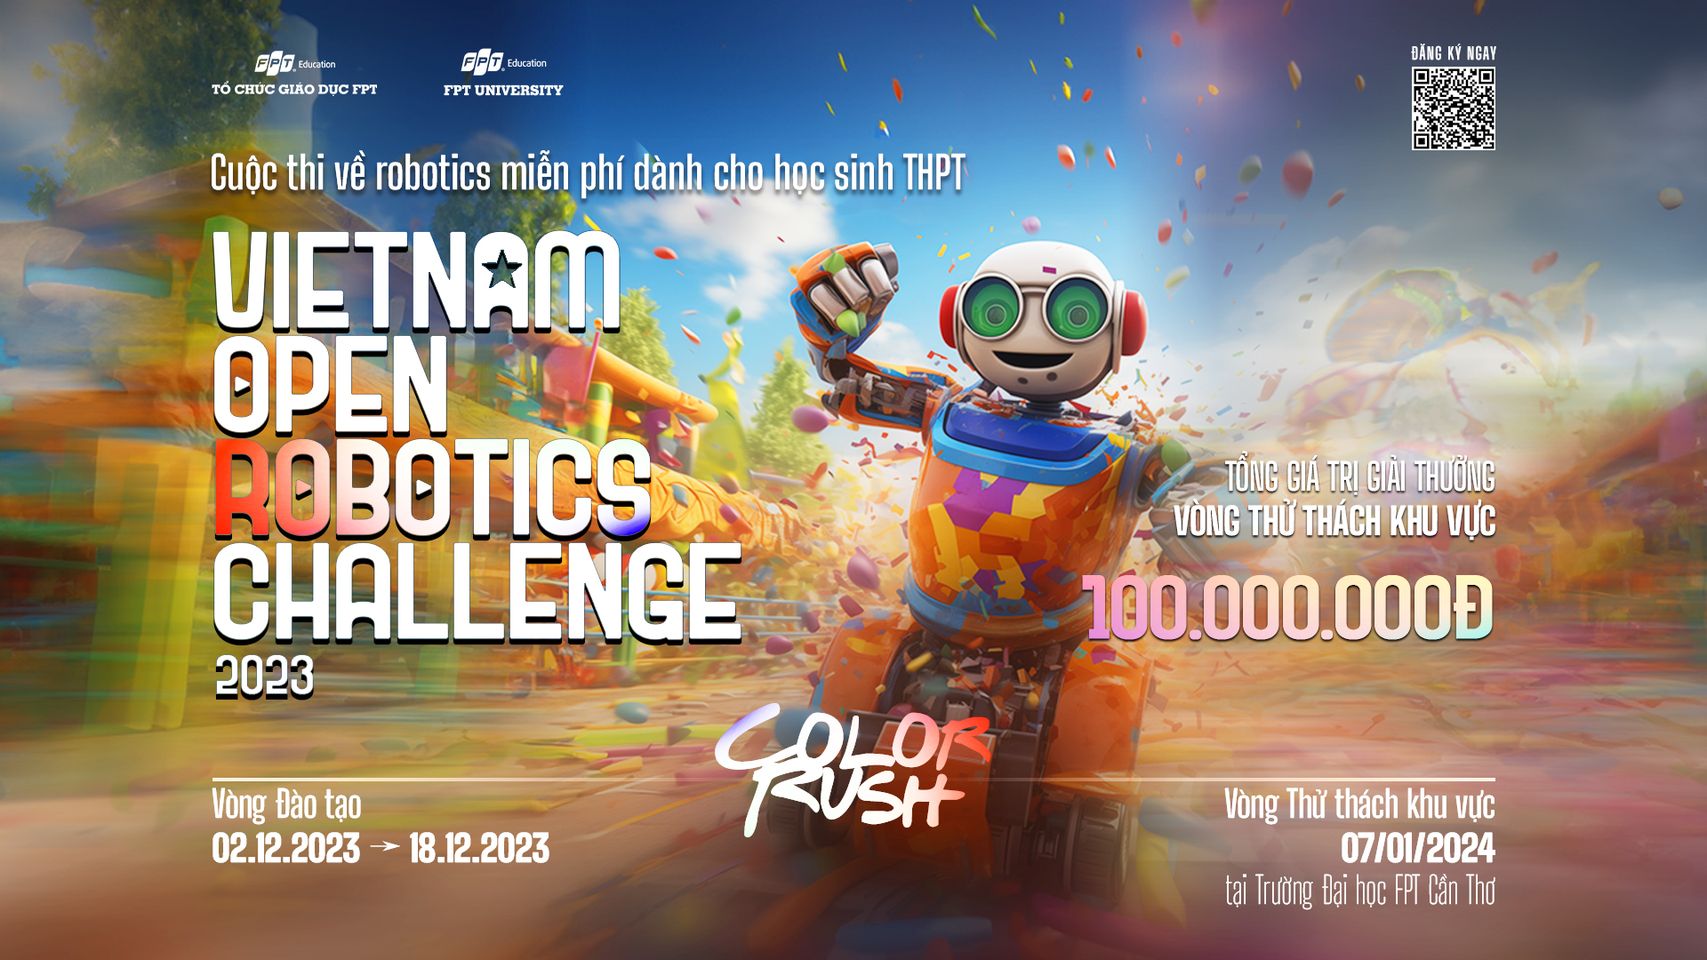 Vòng thử thách khu vực Vietnam Open Robotics Challenge 2023